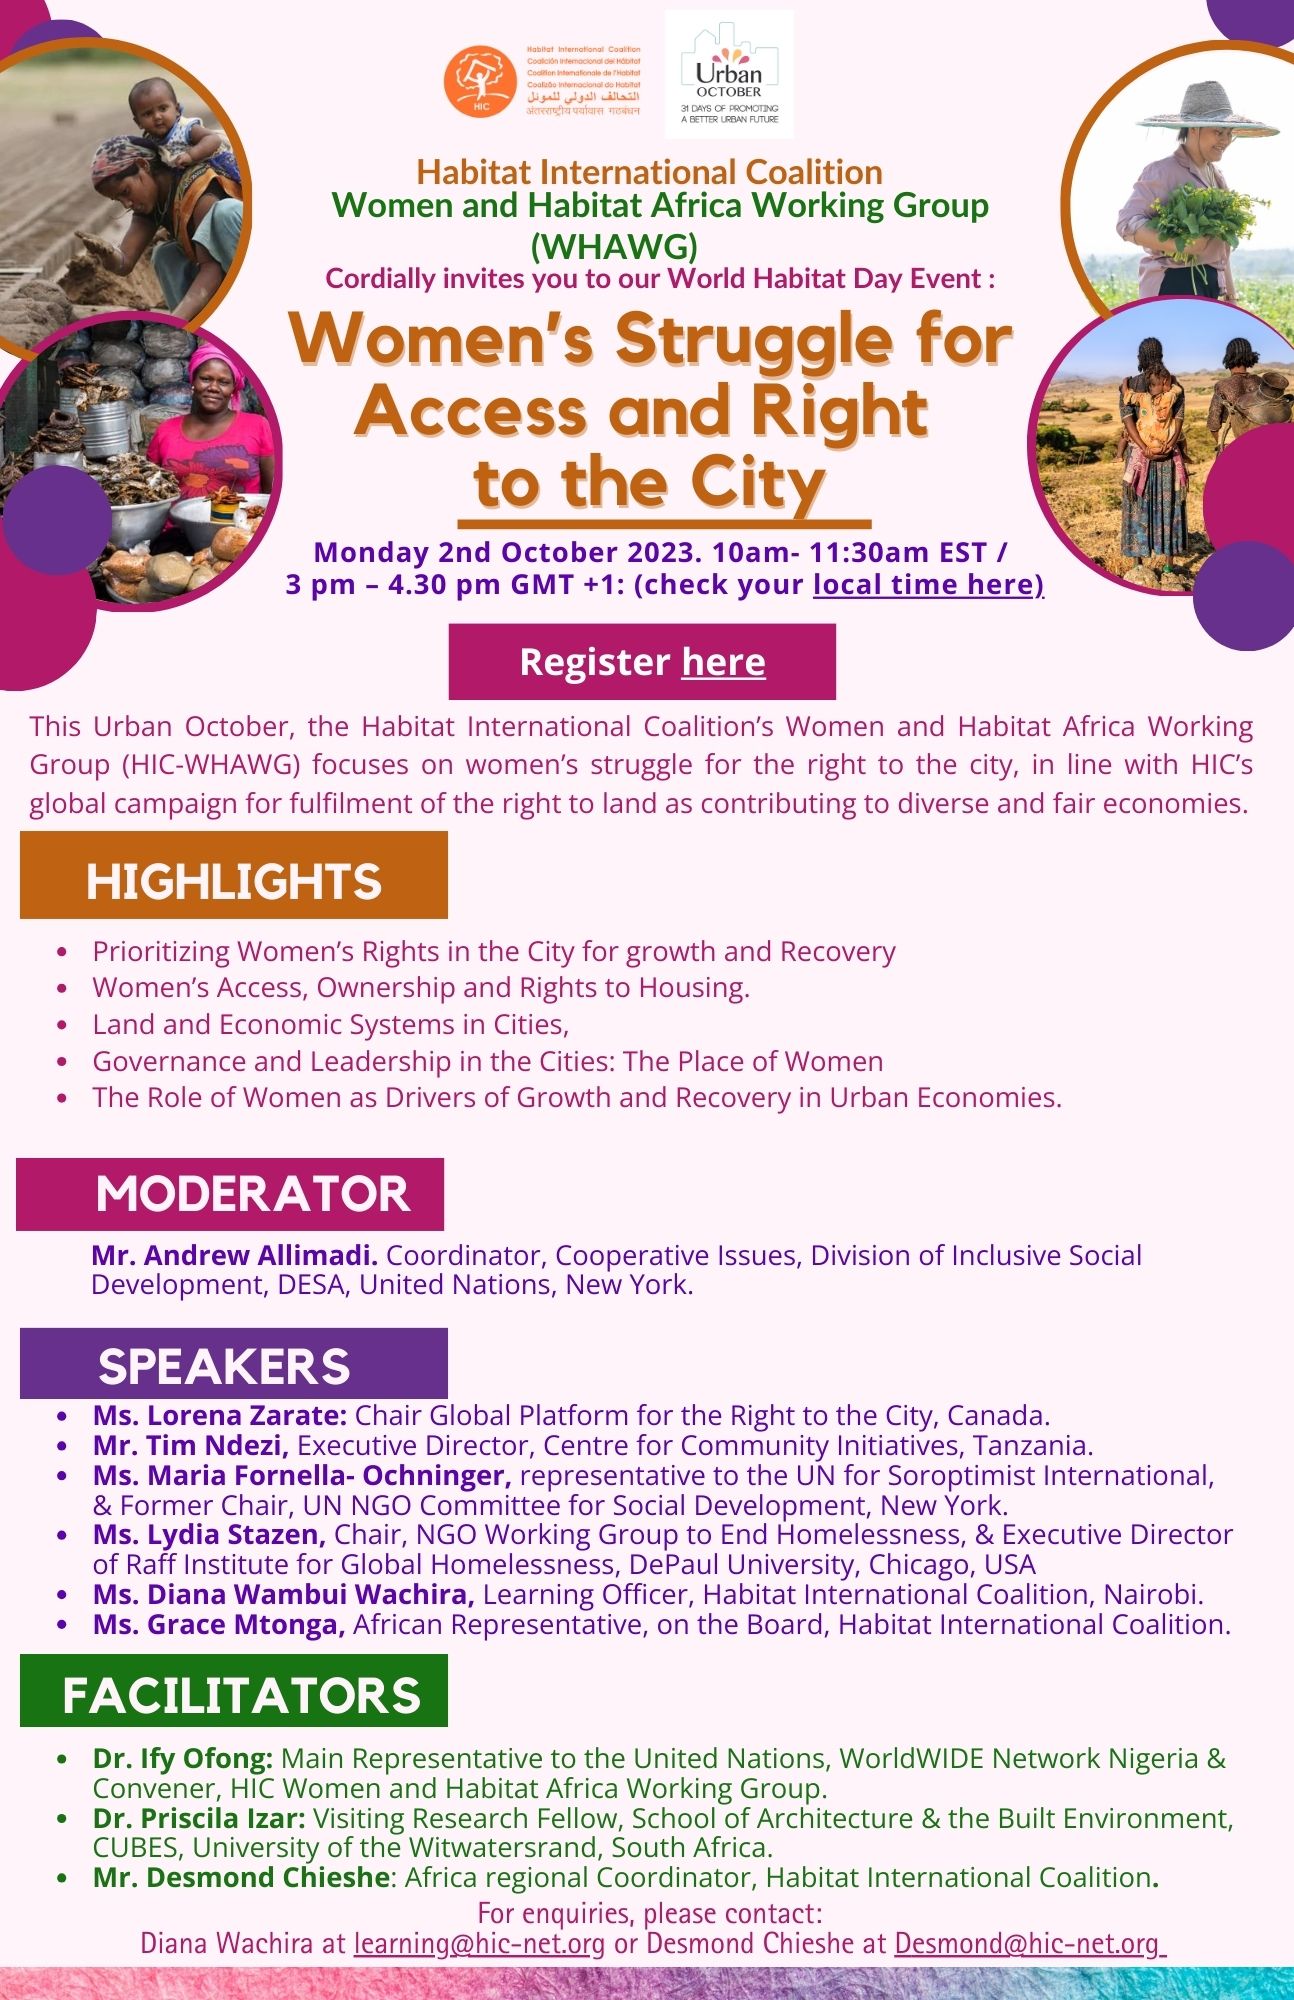 La lucha de las mujeres por el acceso y el derecho a las ciudades – evento Día Mundial del Hábitat Grupo de Trabajo Mujeres y Hábitat África